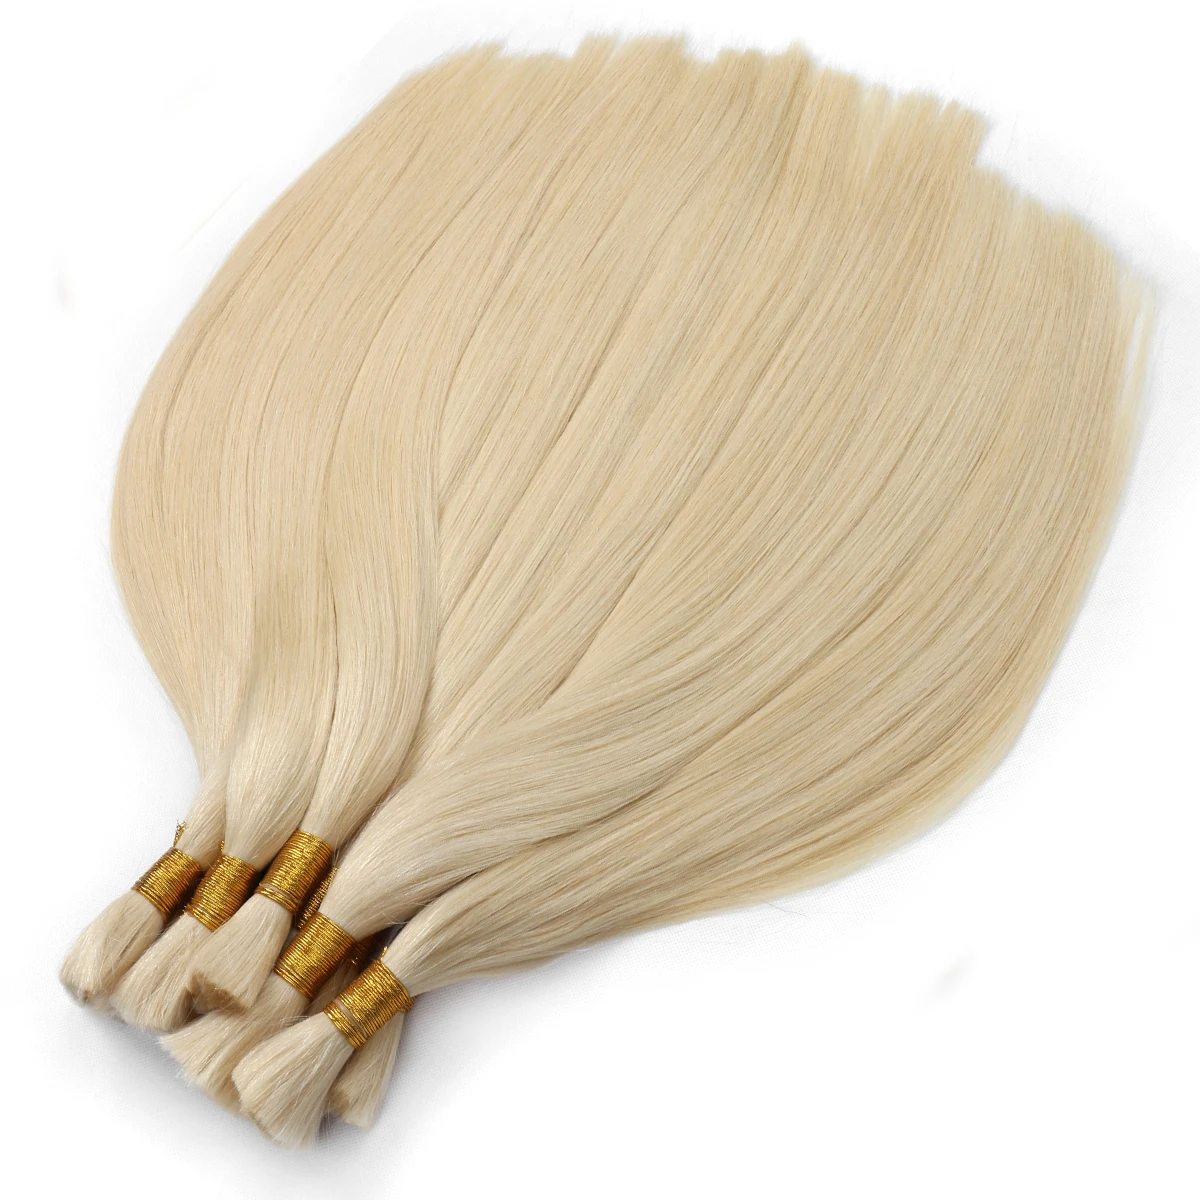 BHF Натуральные волосы для плетения косичек Без утка, вьетнамские оригинальные натуральные волосы для плетения косичек, 100 г